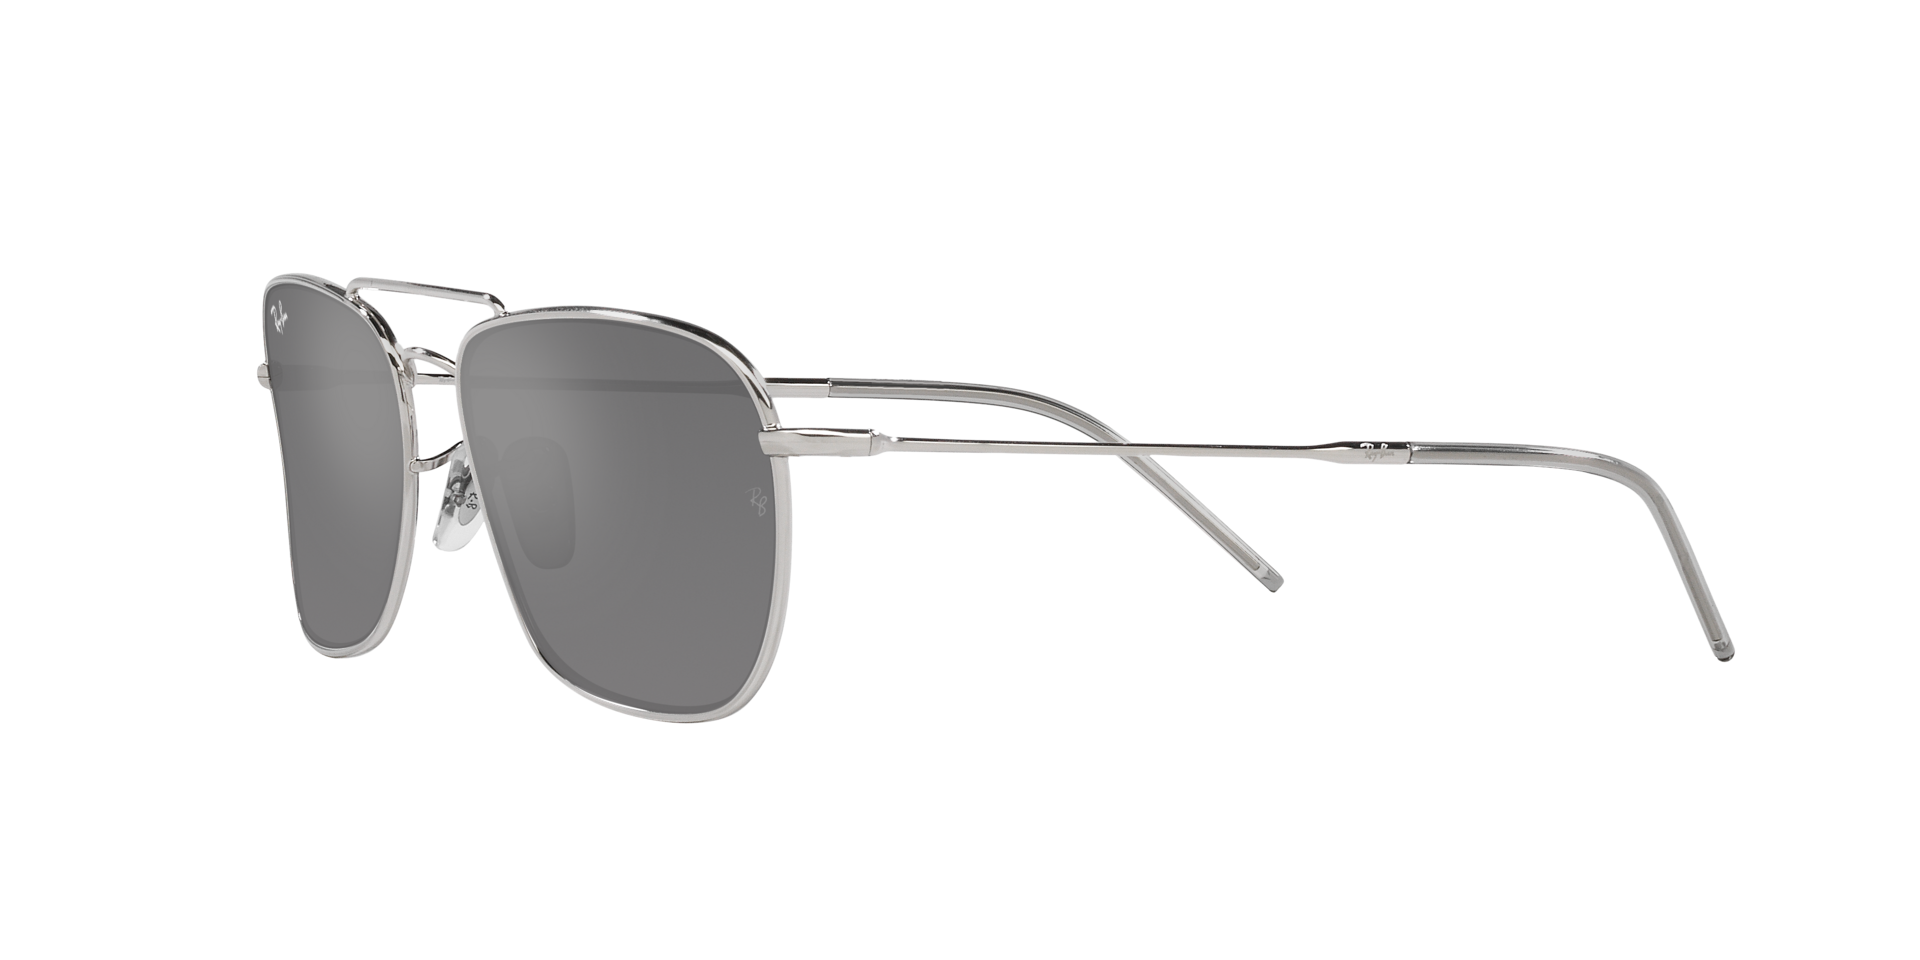 Das Bild zeigt die Sonnenbrille  0RBR0102S 003/GS  von der Marke Ray Ban in  Silber.